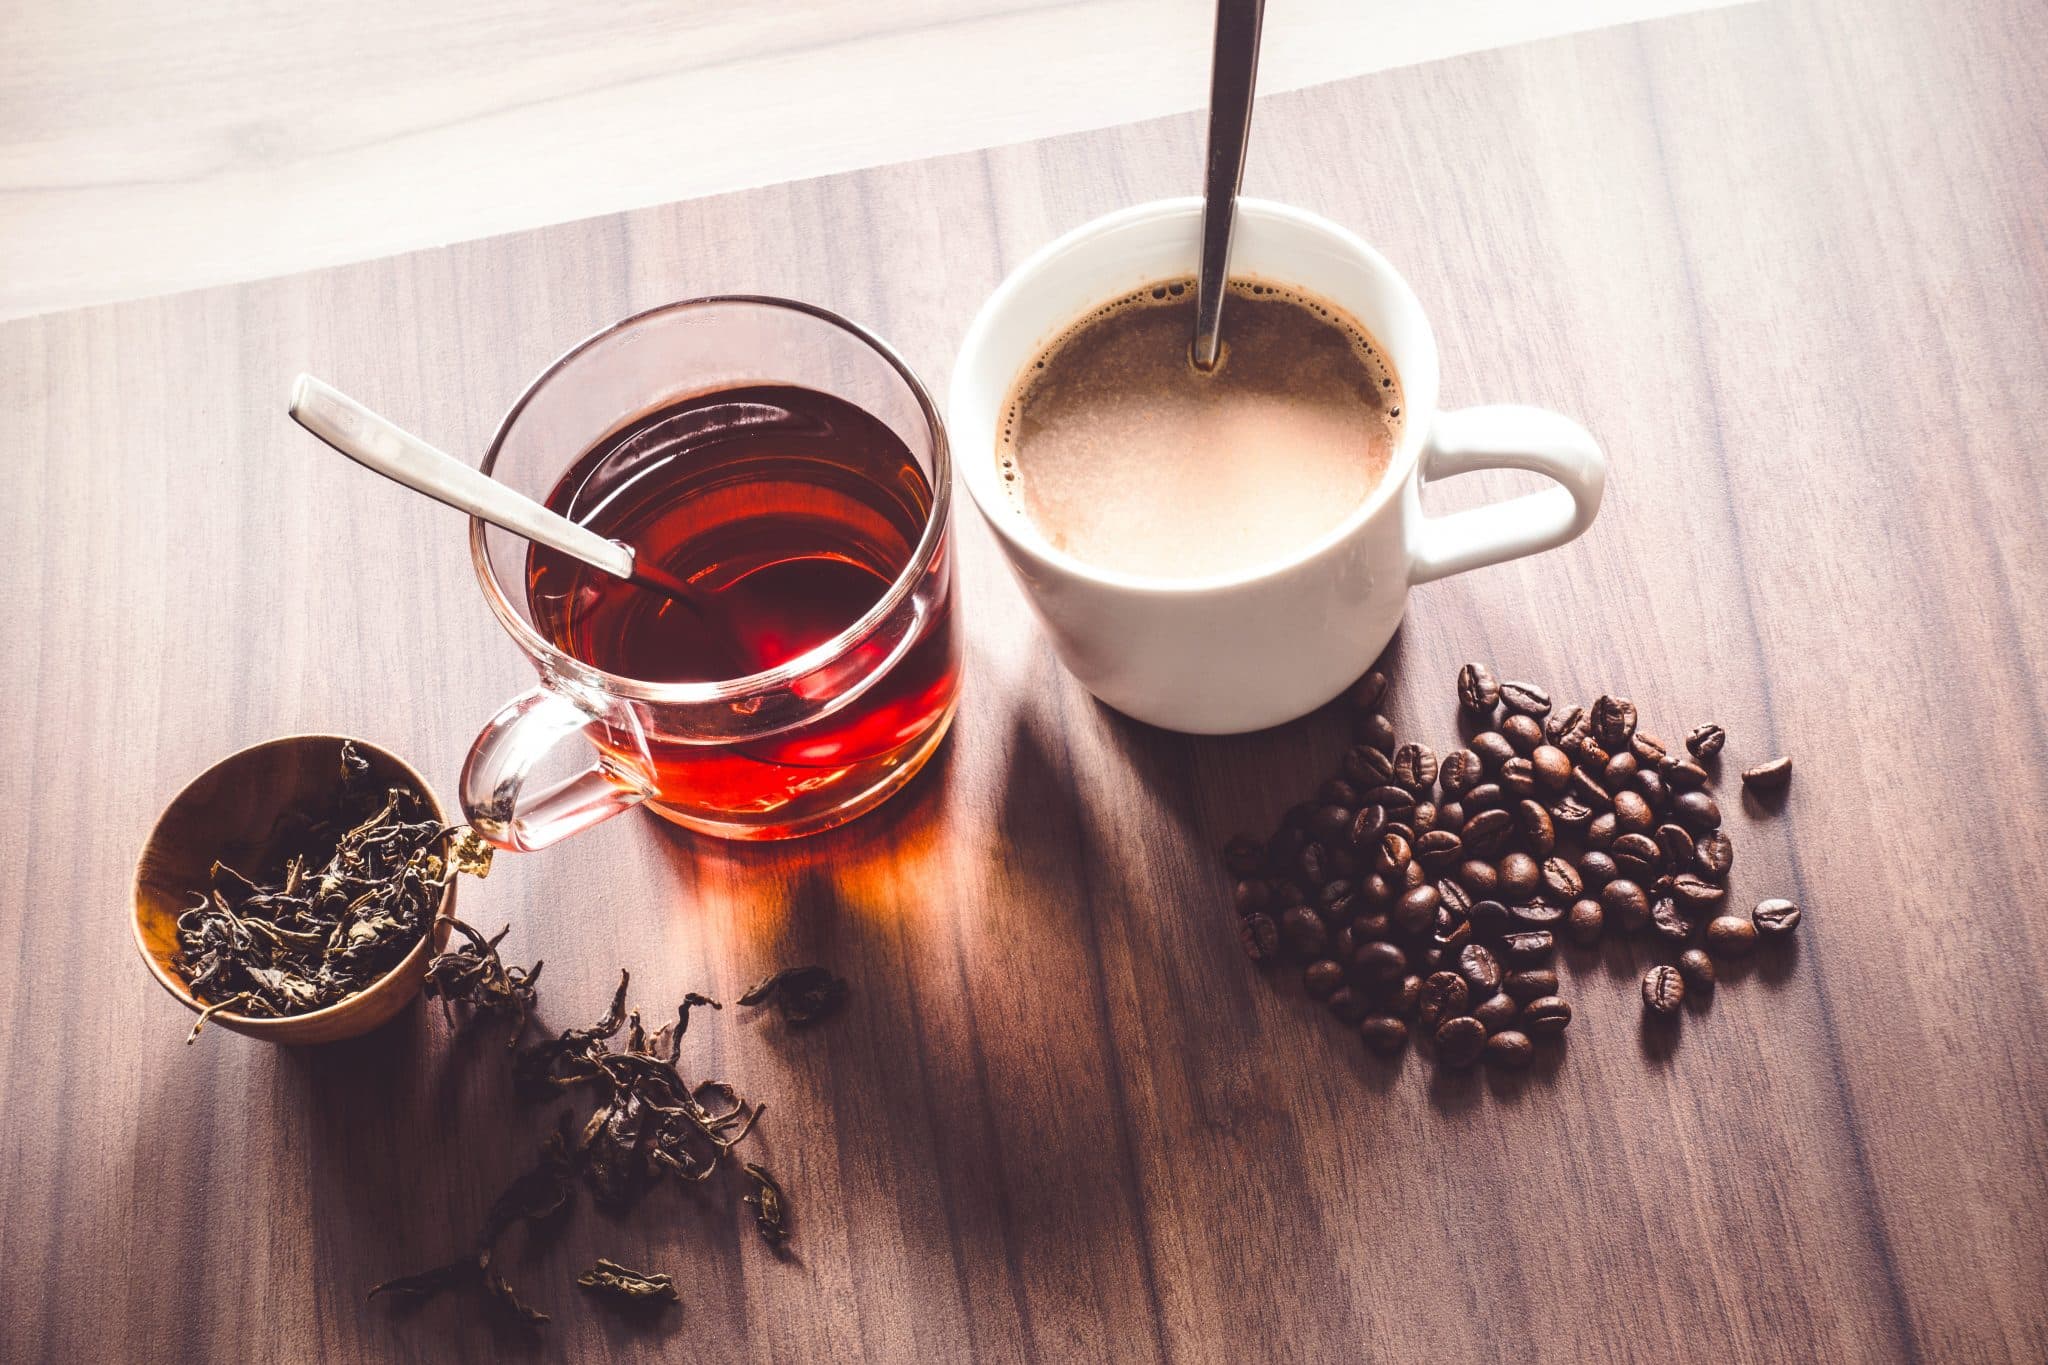 Kaffee und Tee in Tassen mit Bohnen und Teeblättern auf einer Tischplatte